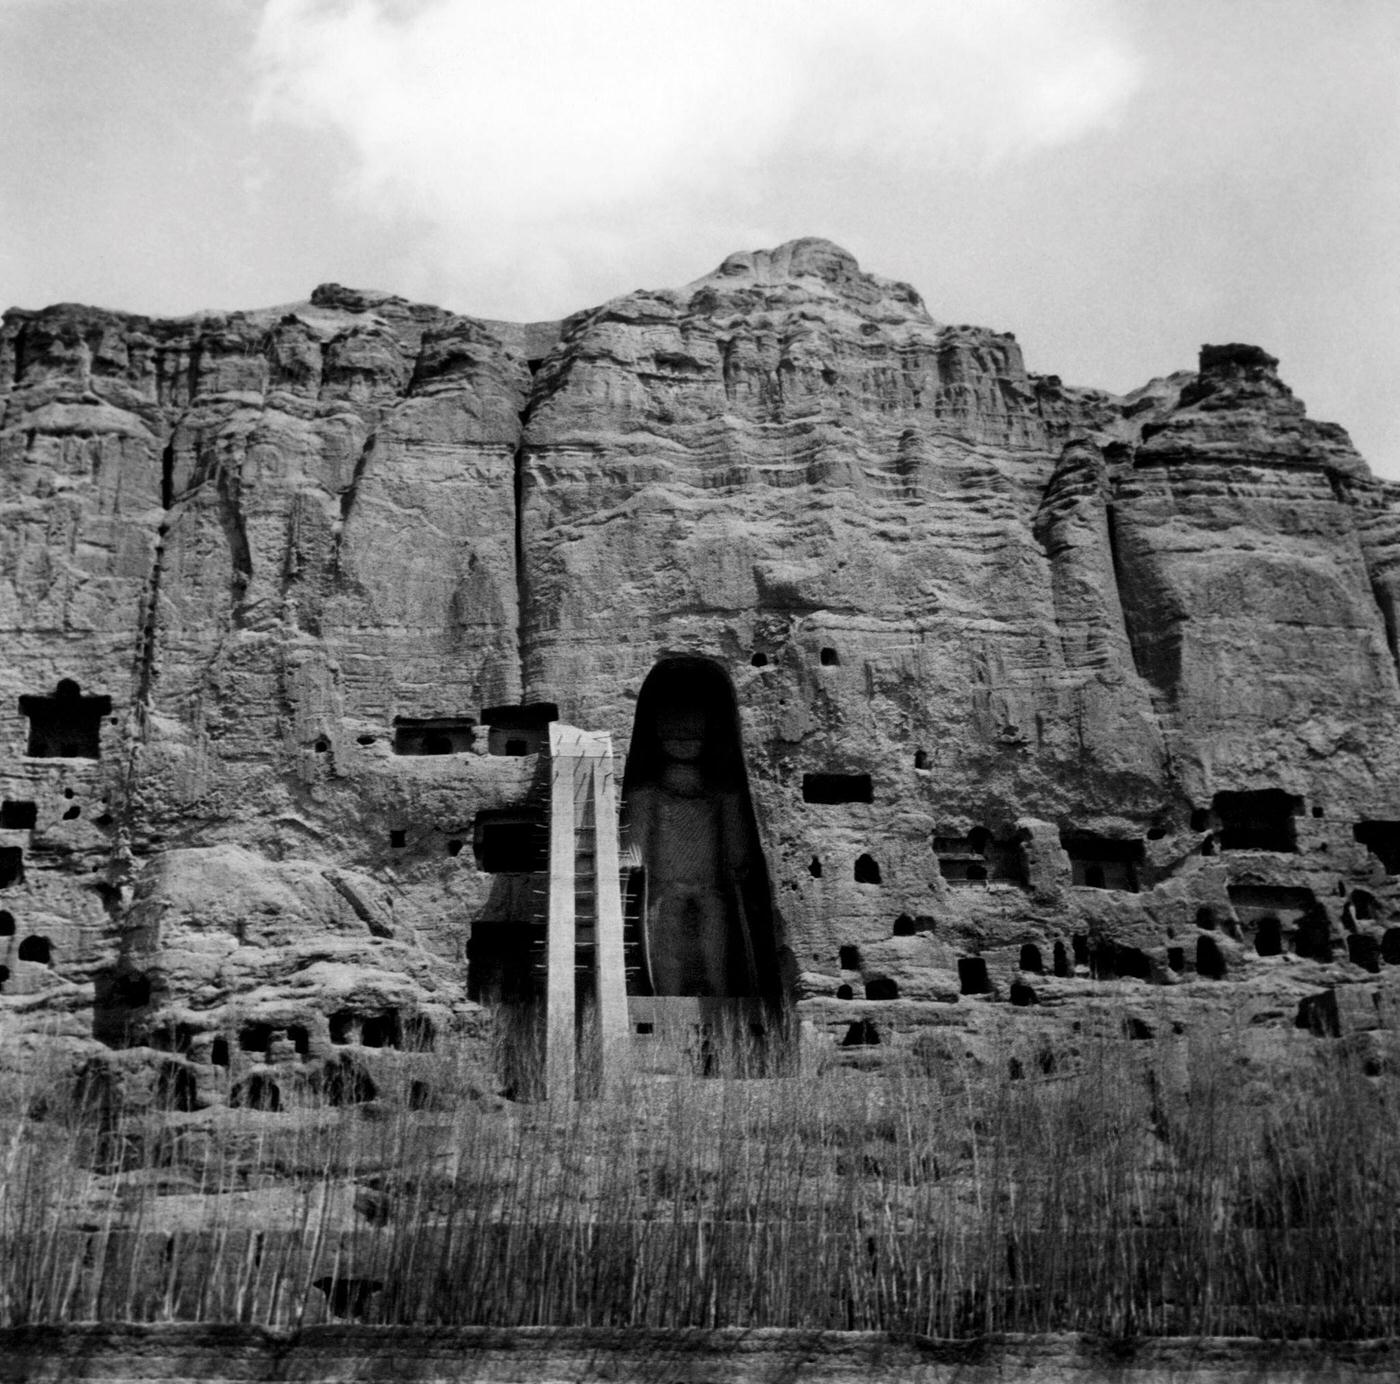 The Buddhas of Bamiyan, Afghanistan, 1956.